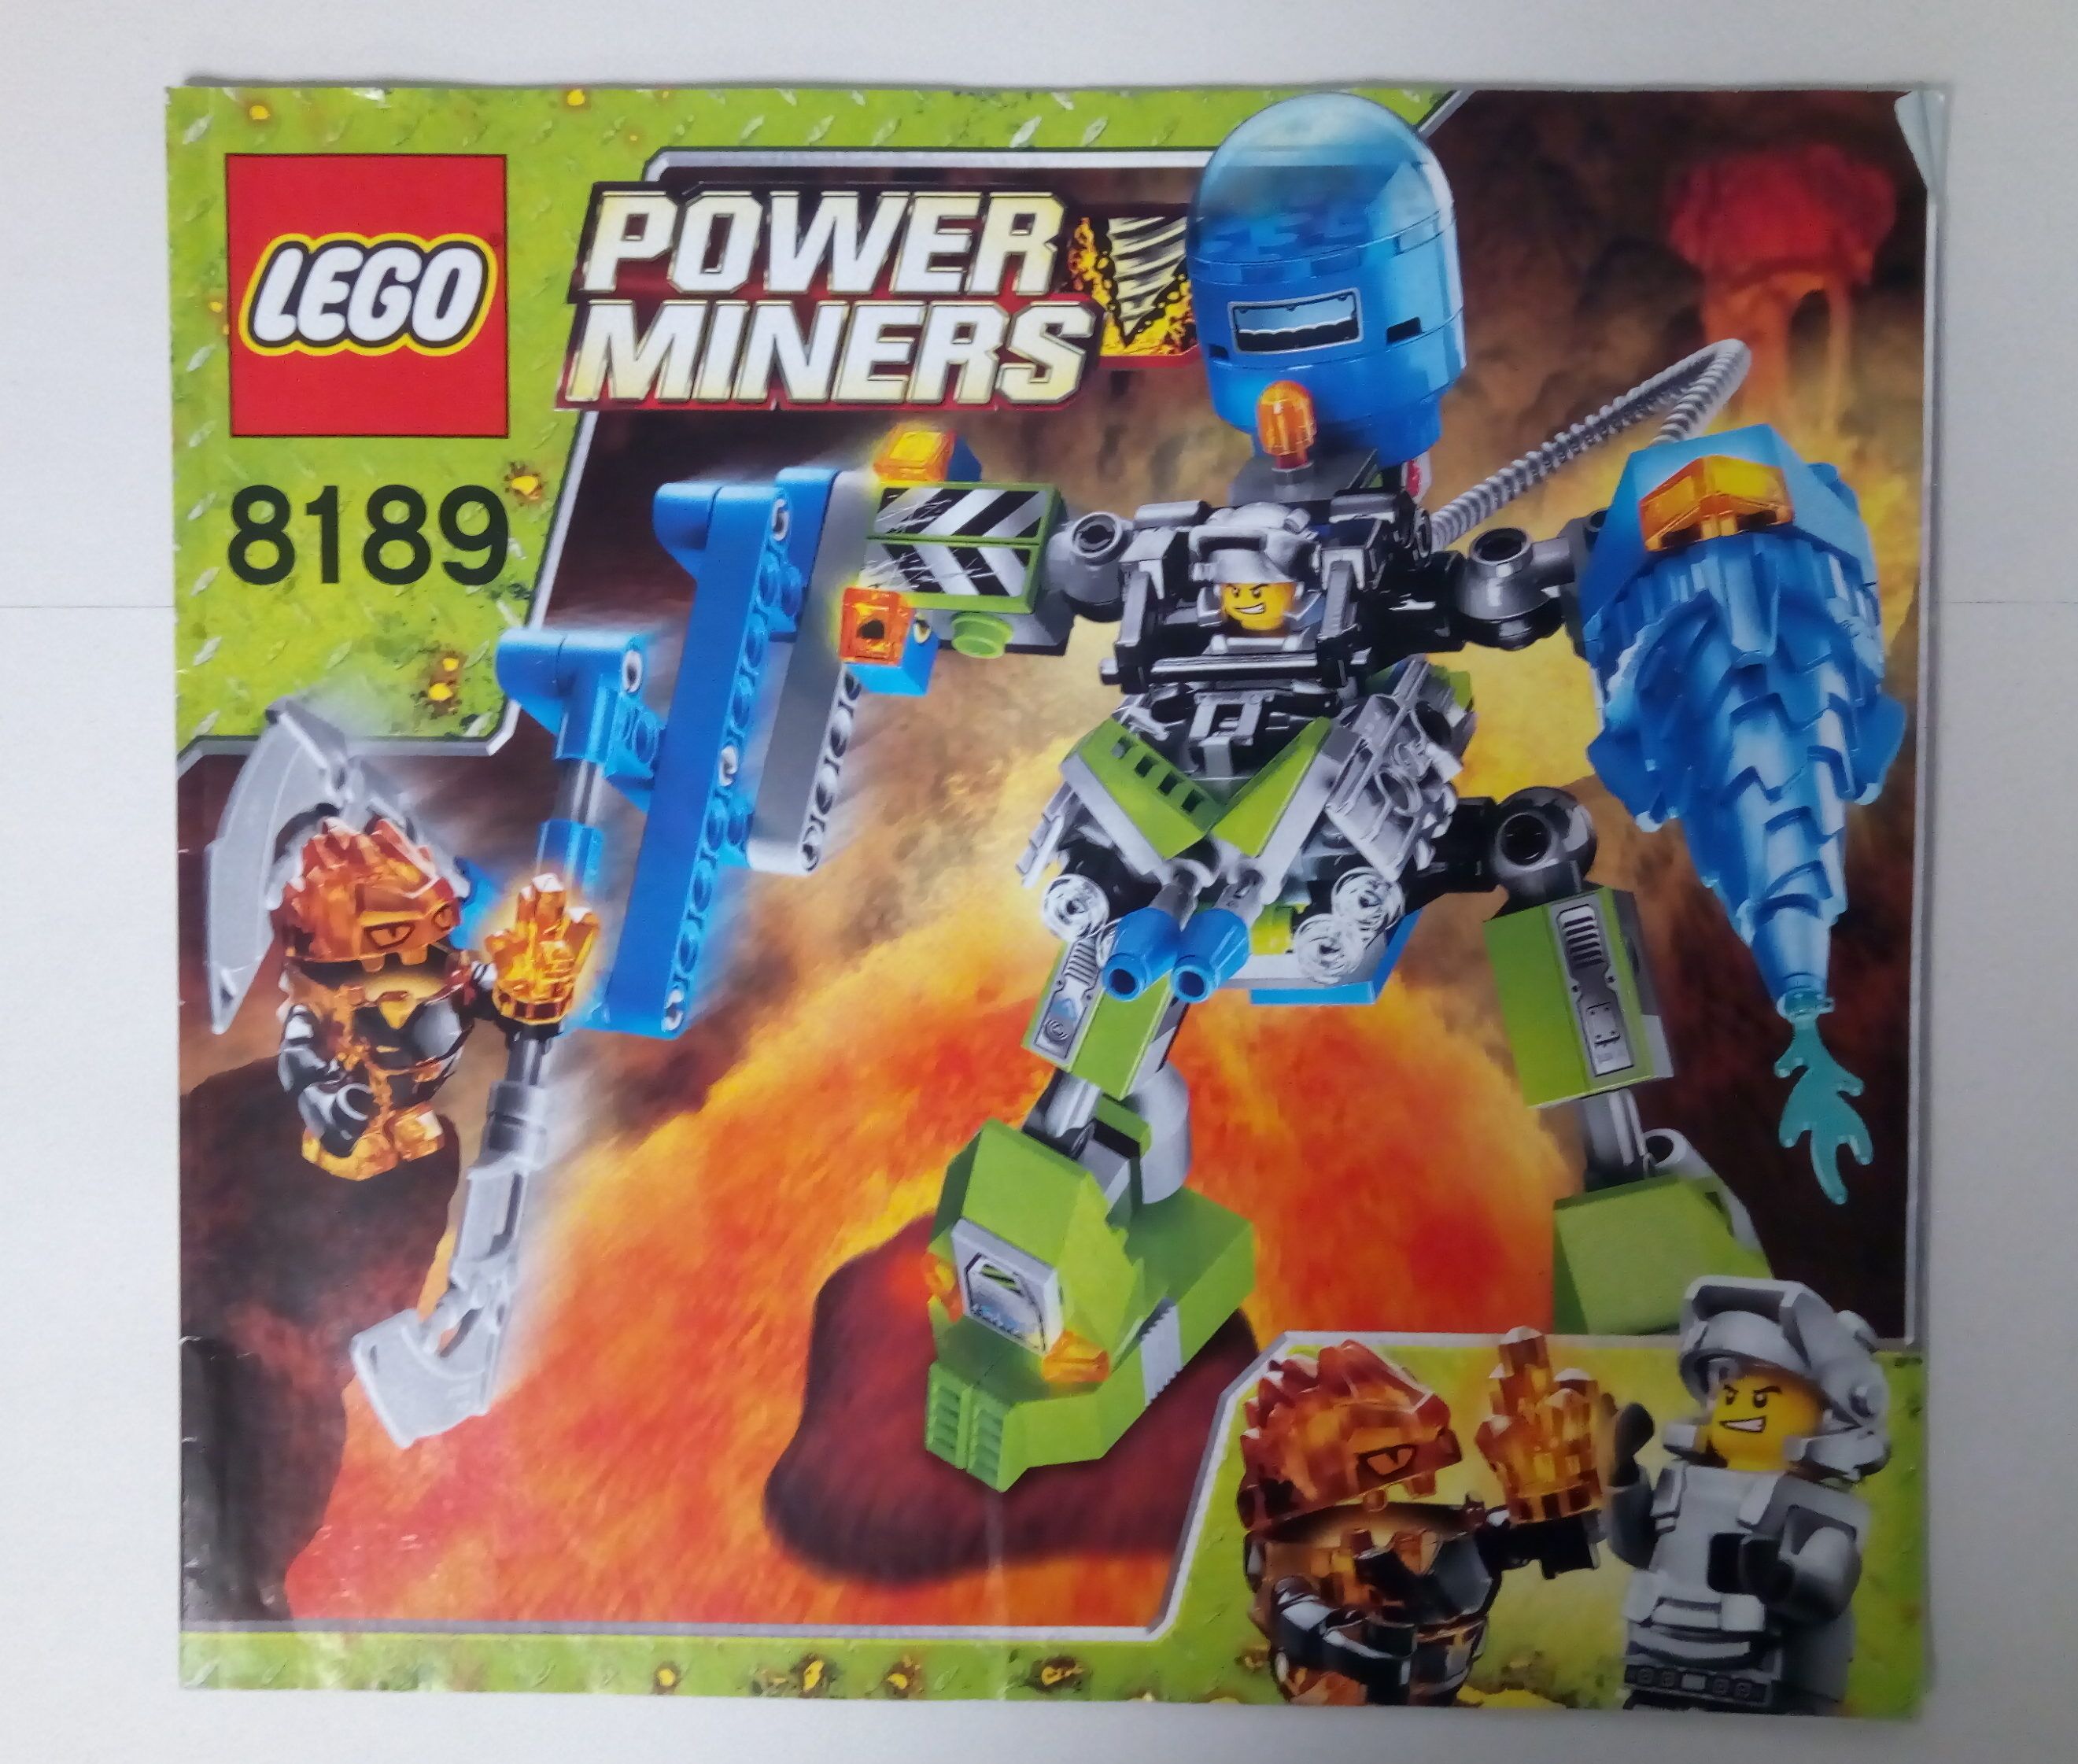 8189ö - Lego Power Miners Összeszerelési útmutató 8189